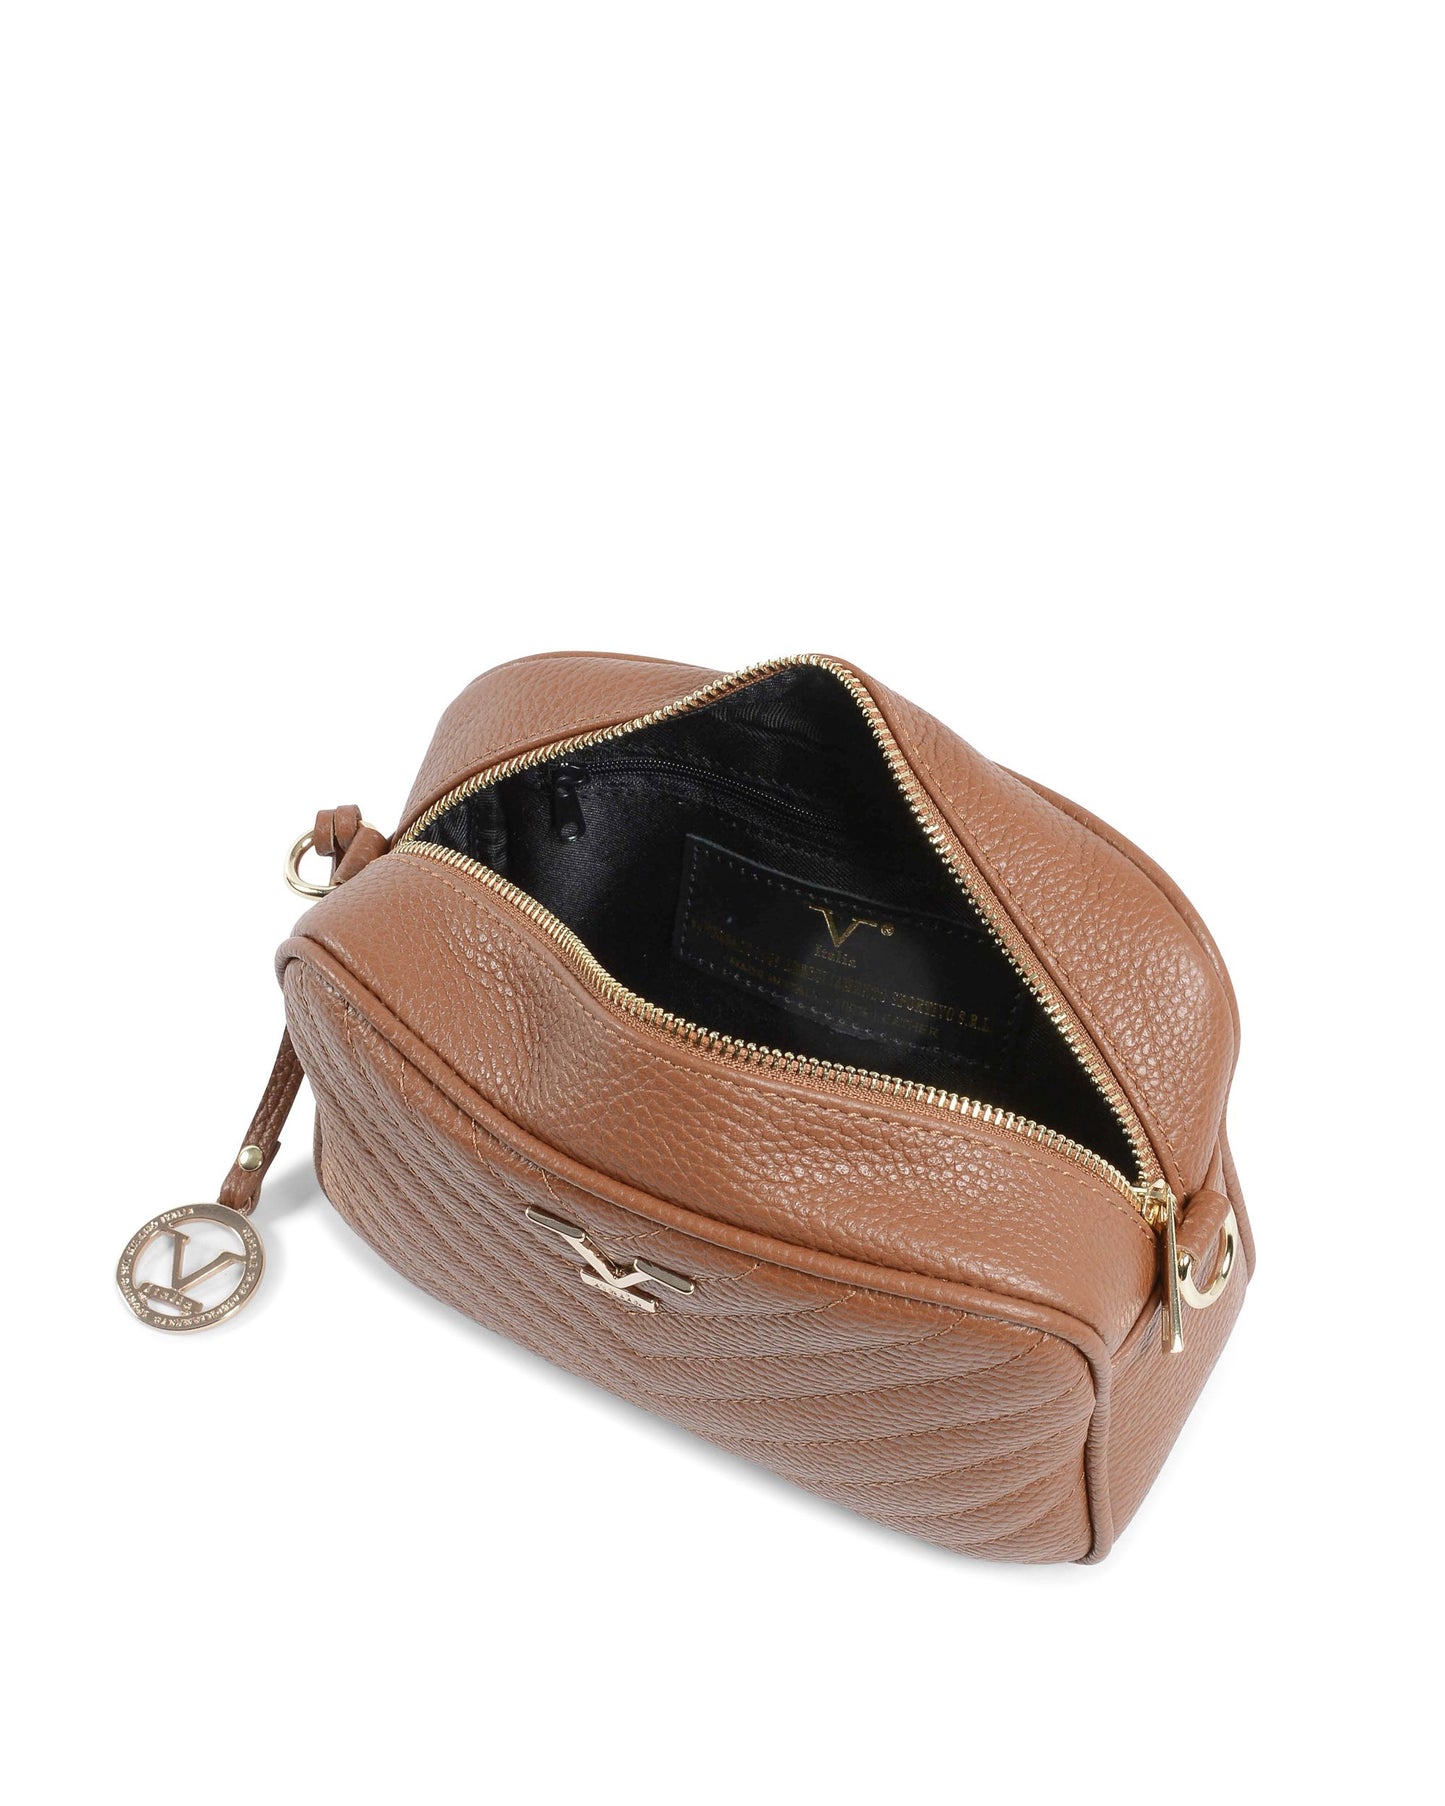 V Italia Womens Handbag Tan V101 52 DOLLARO CUOIO